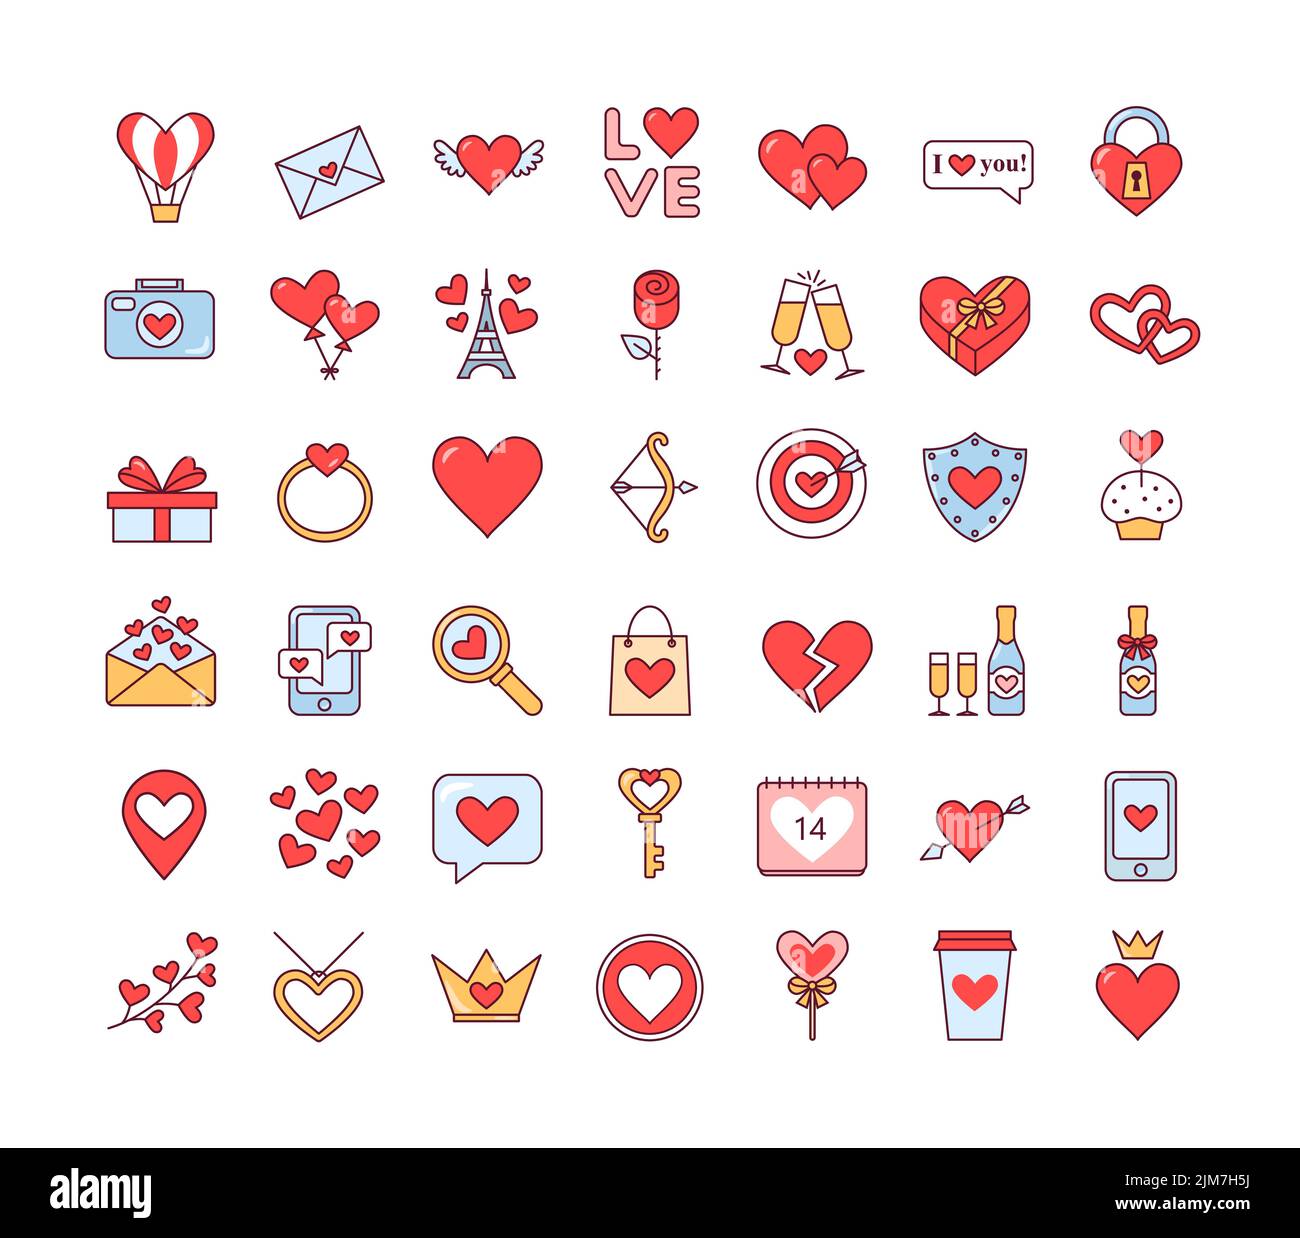 San Valentino. Amore. Febbraio 14. Set di icone isolate carine su sfondo bianco. Vettore Illustrazione Vettoriale